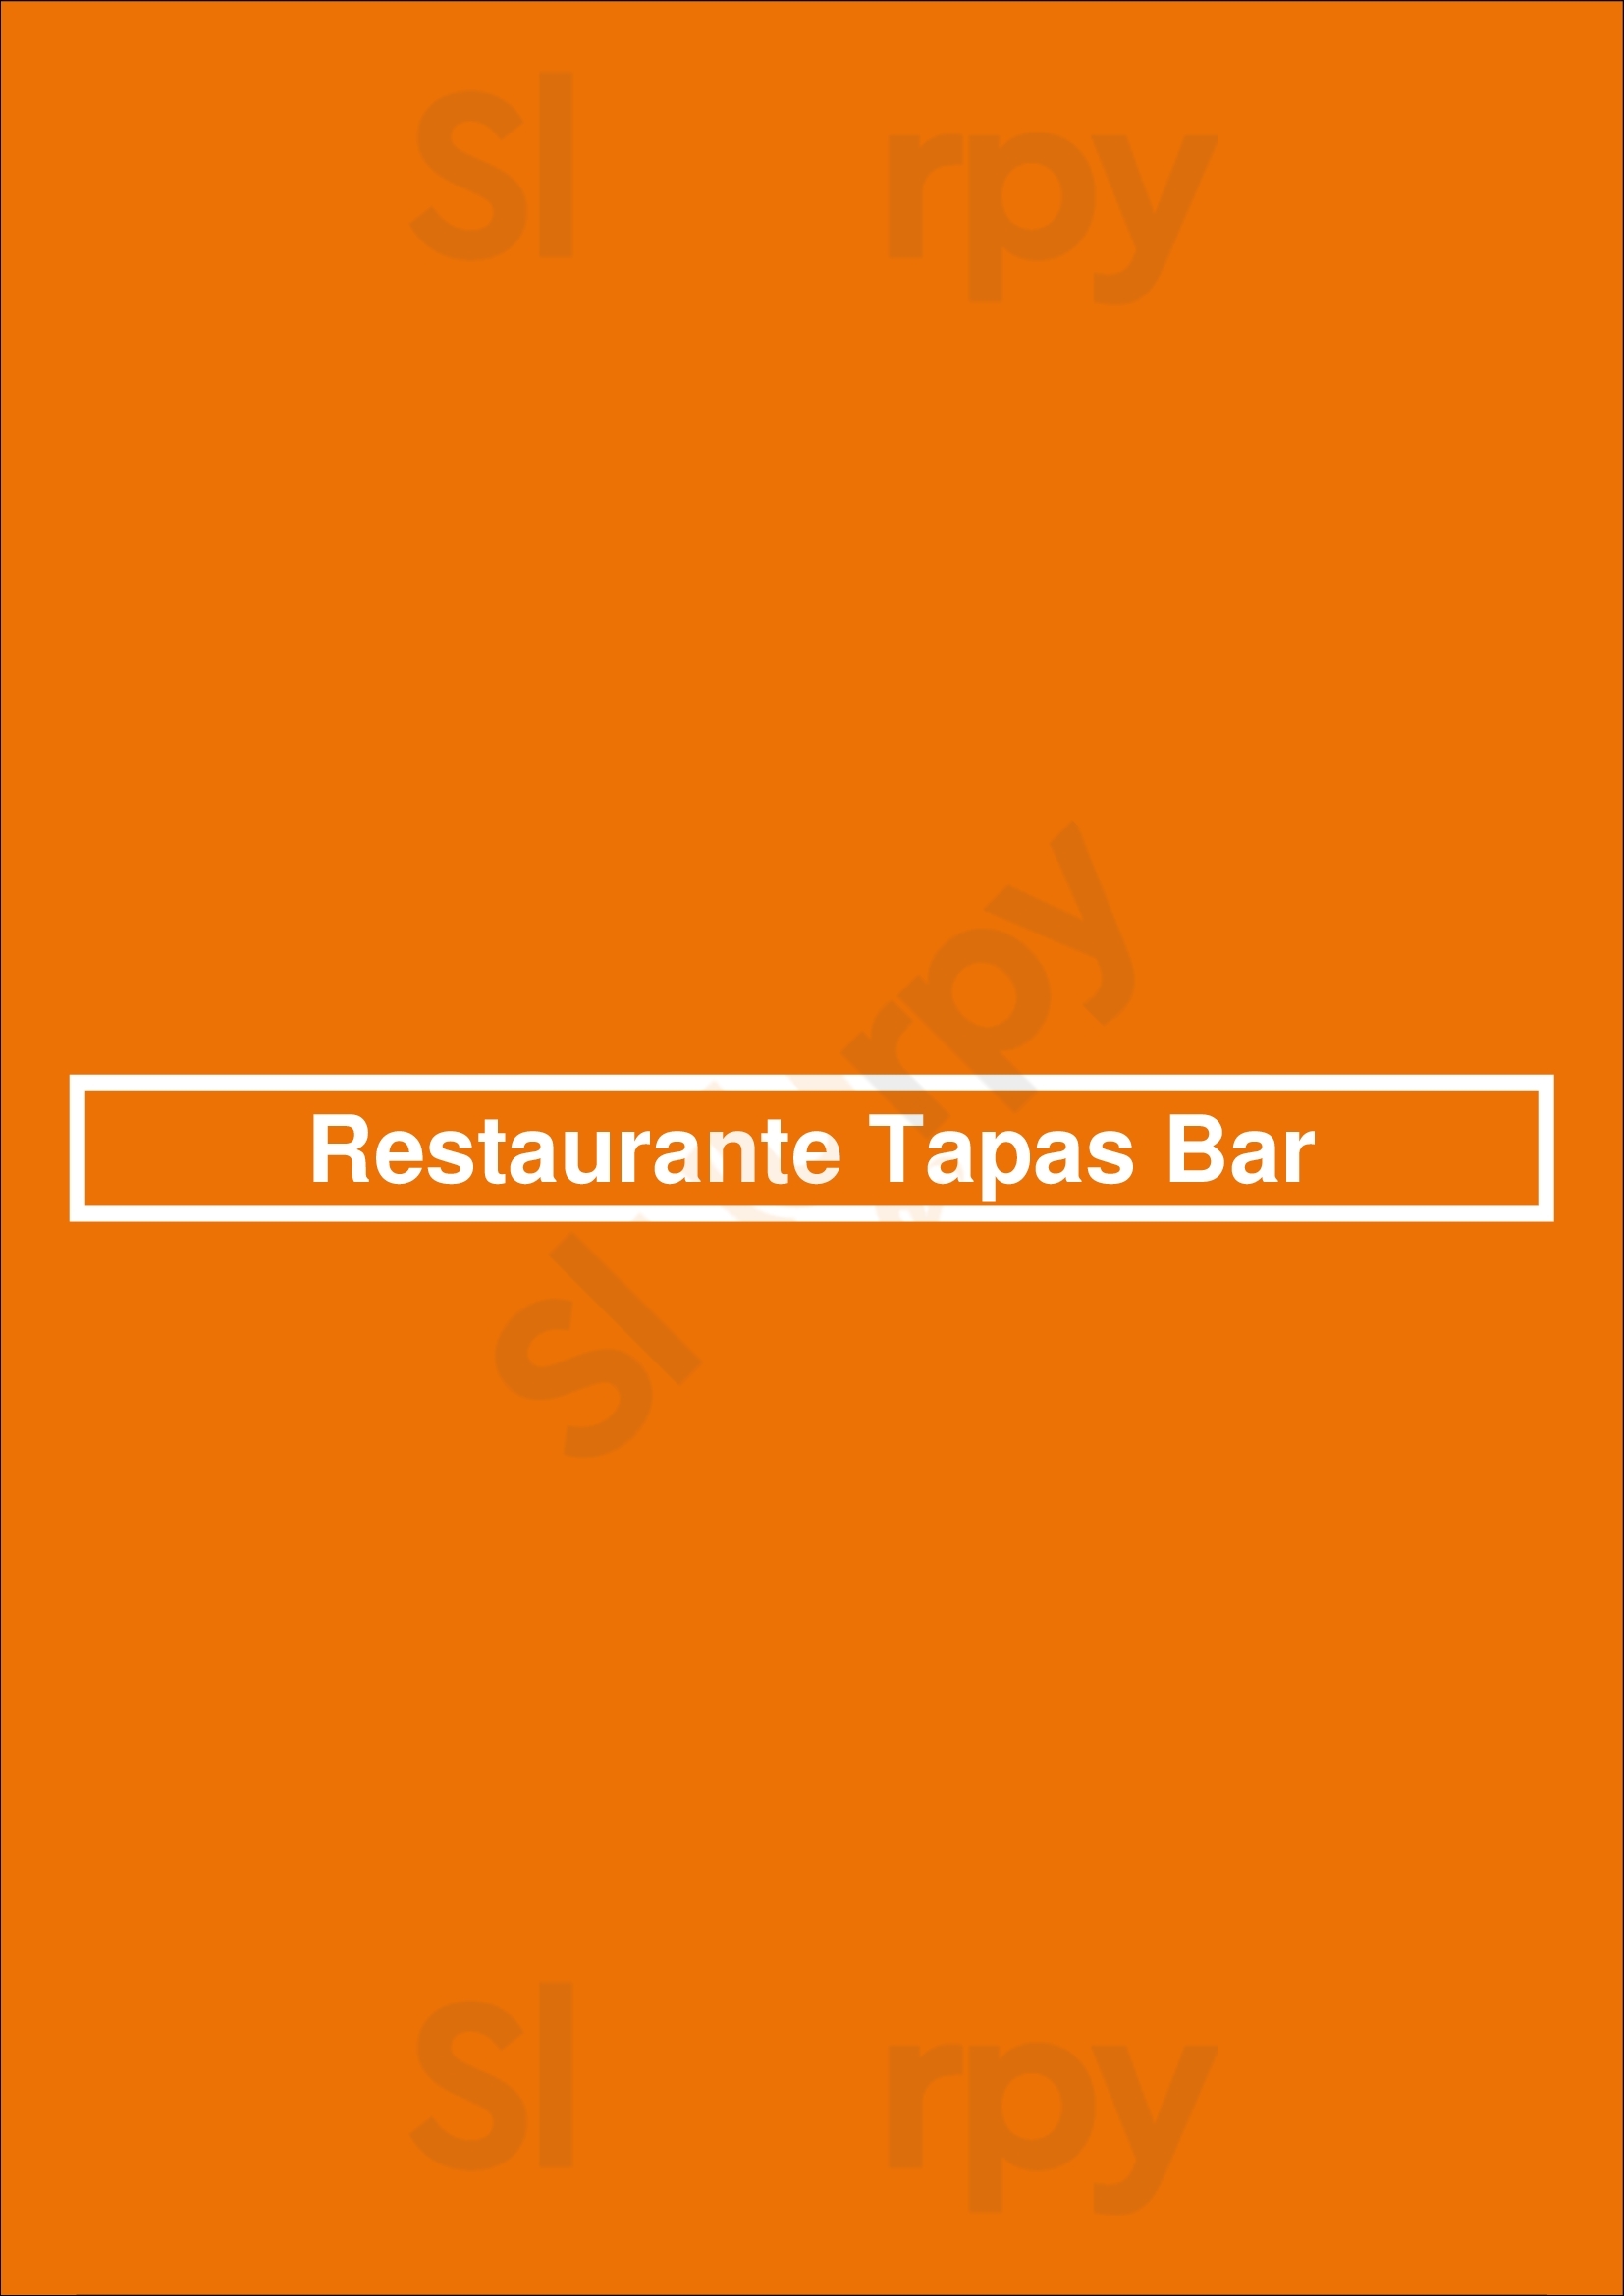 Restaurante Tapas Bar Lisboa Menu - 1